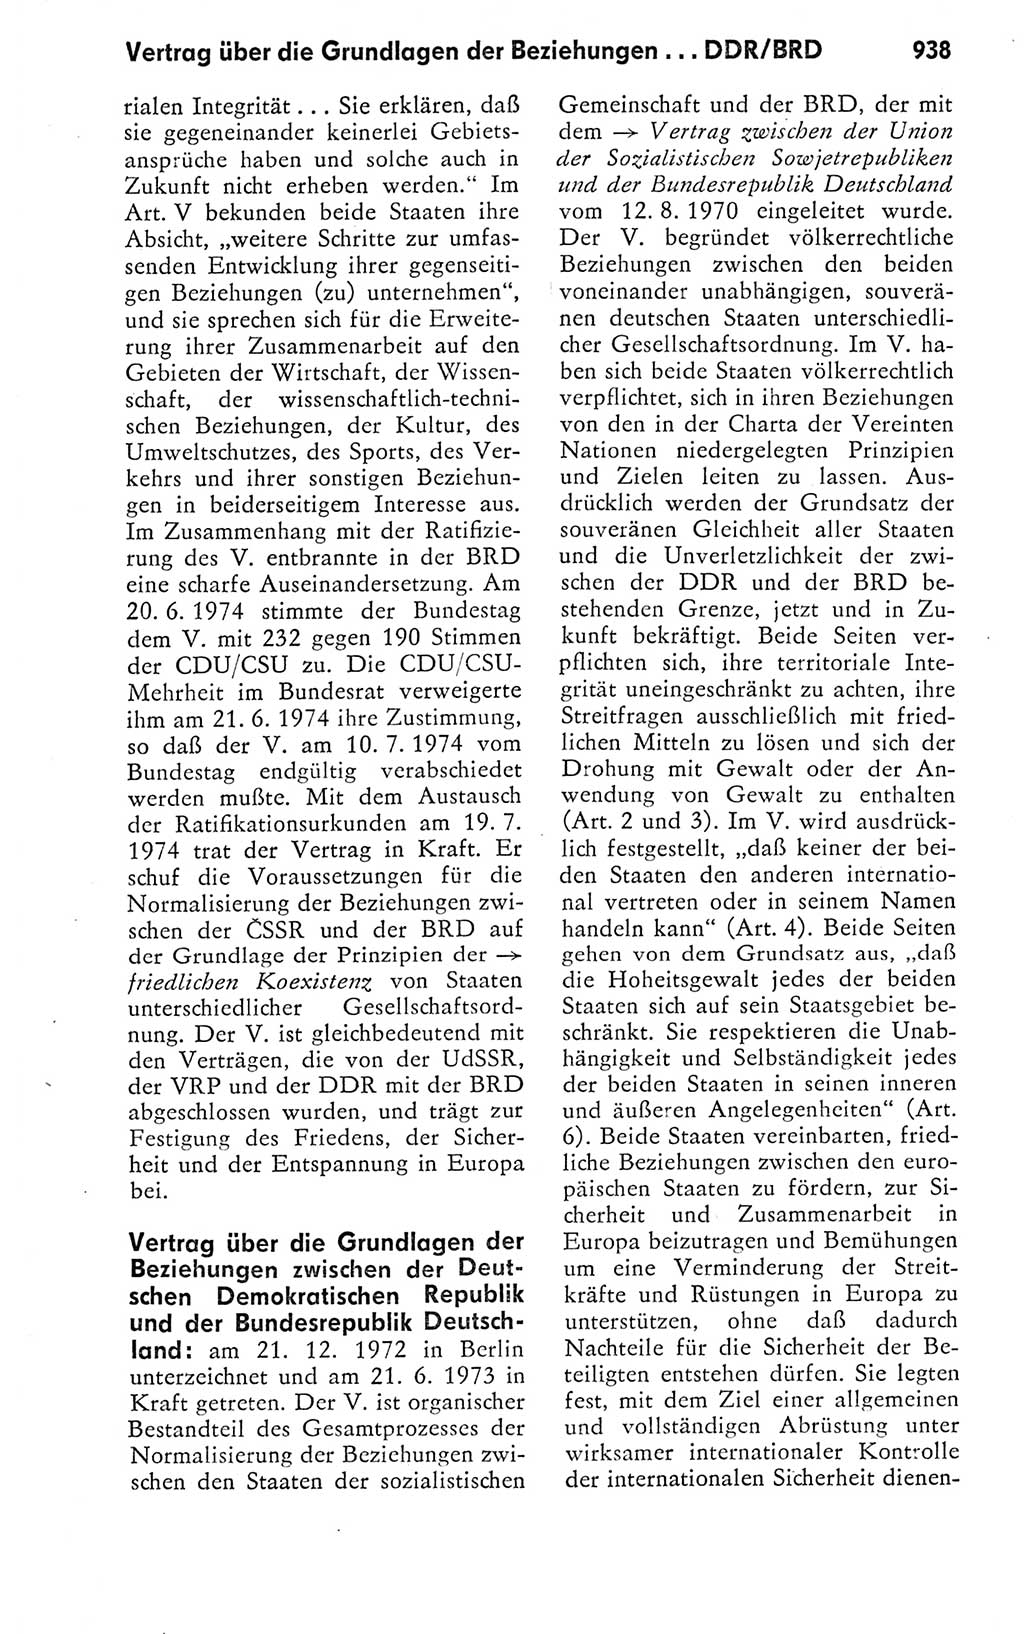 Kleines politisches Wörterbuch [Deutsche Demokratische Republik (DDR)] 1978, Seite 938 (Kl. pol. Wb. DDR 1978, S. 938)